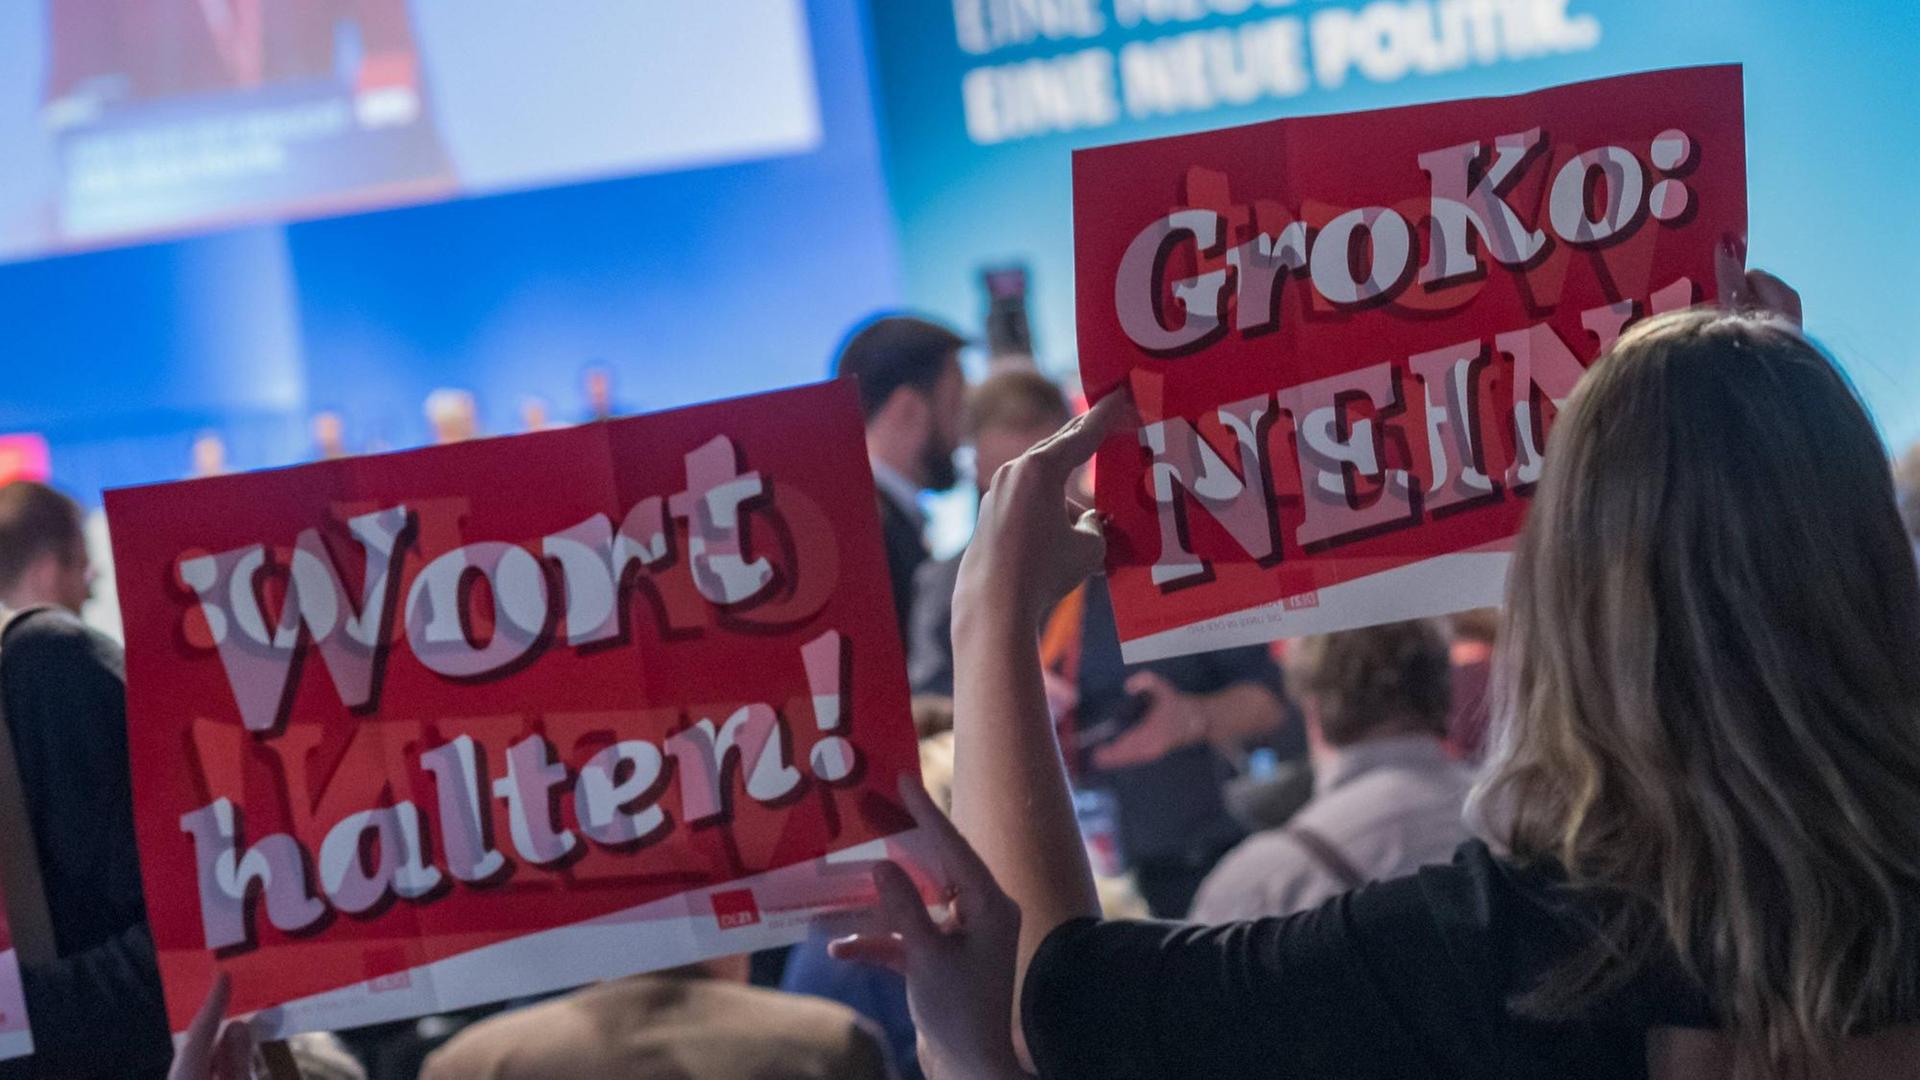 Außerordentlicher Bundestag der SPD im World Conference Center Bonn im Januar 2018. Gegner der Großen Koalition halten Schilder hoch, auf denen "Groko Nein!" steht.